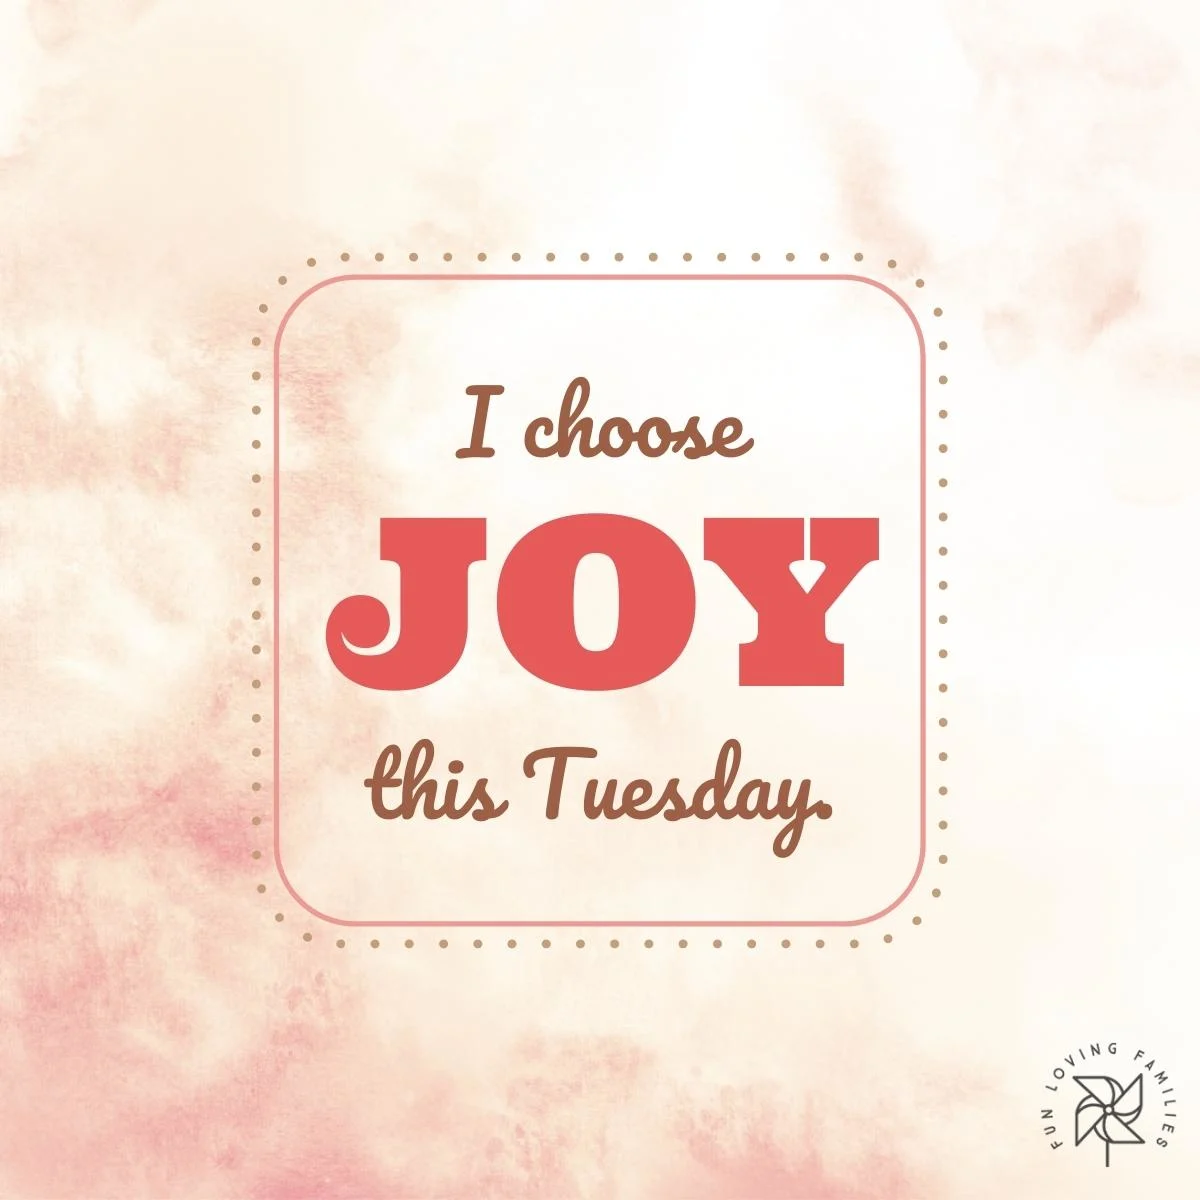 I choose joy this Tuesday affirmation image